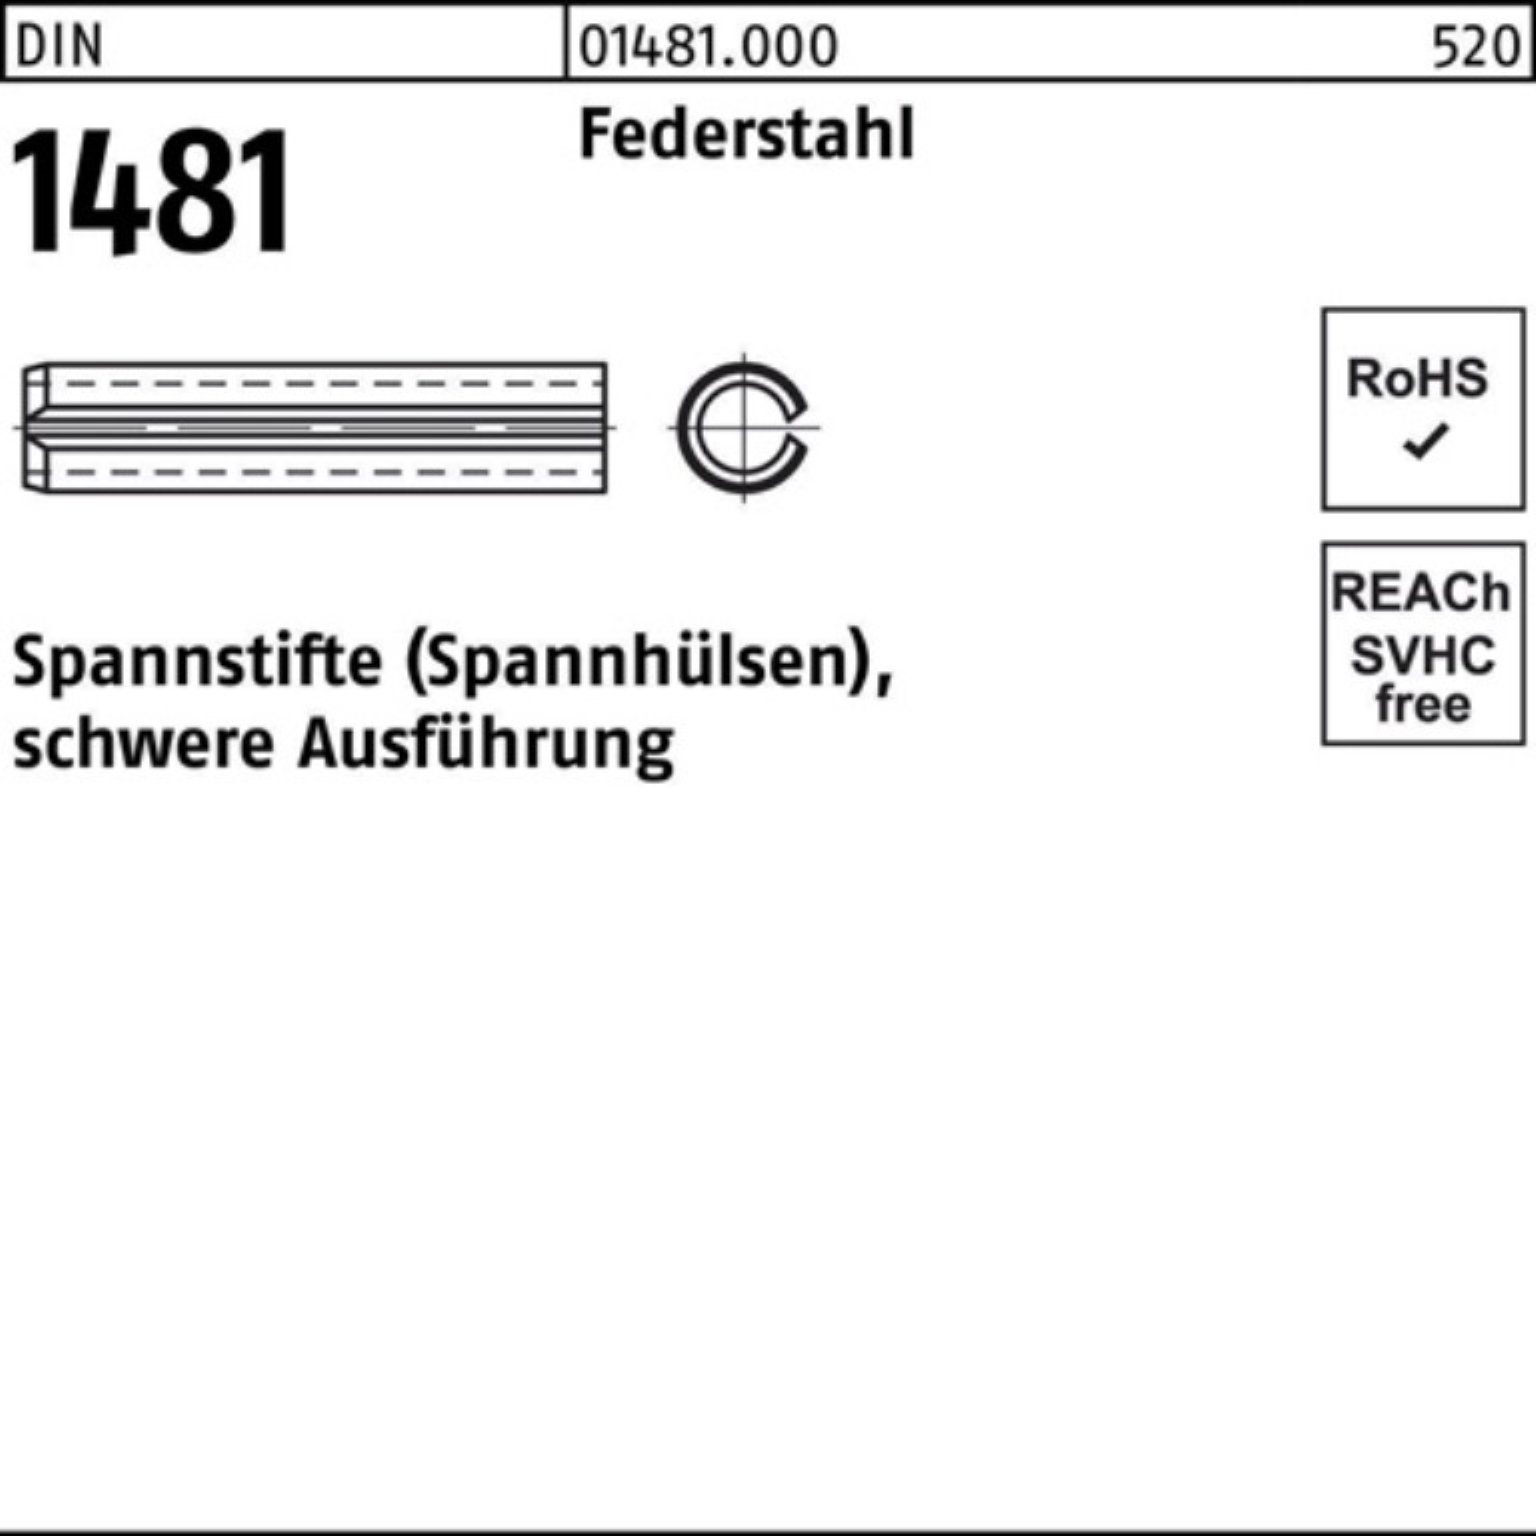 Reyher Spannstift 100er Ausführung Spannstift Pack 30x 160 DIN schwere Federstahl 1481